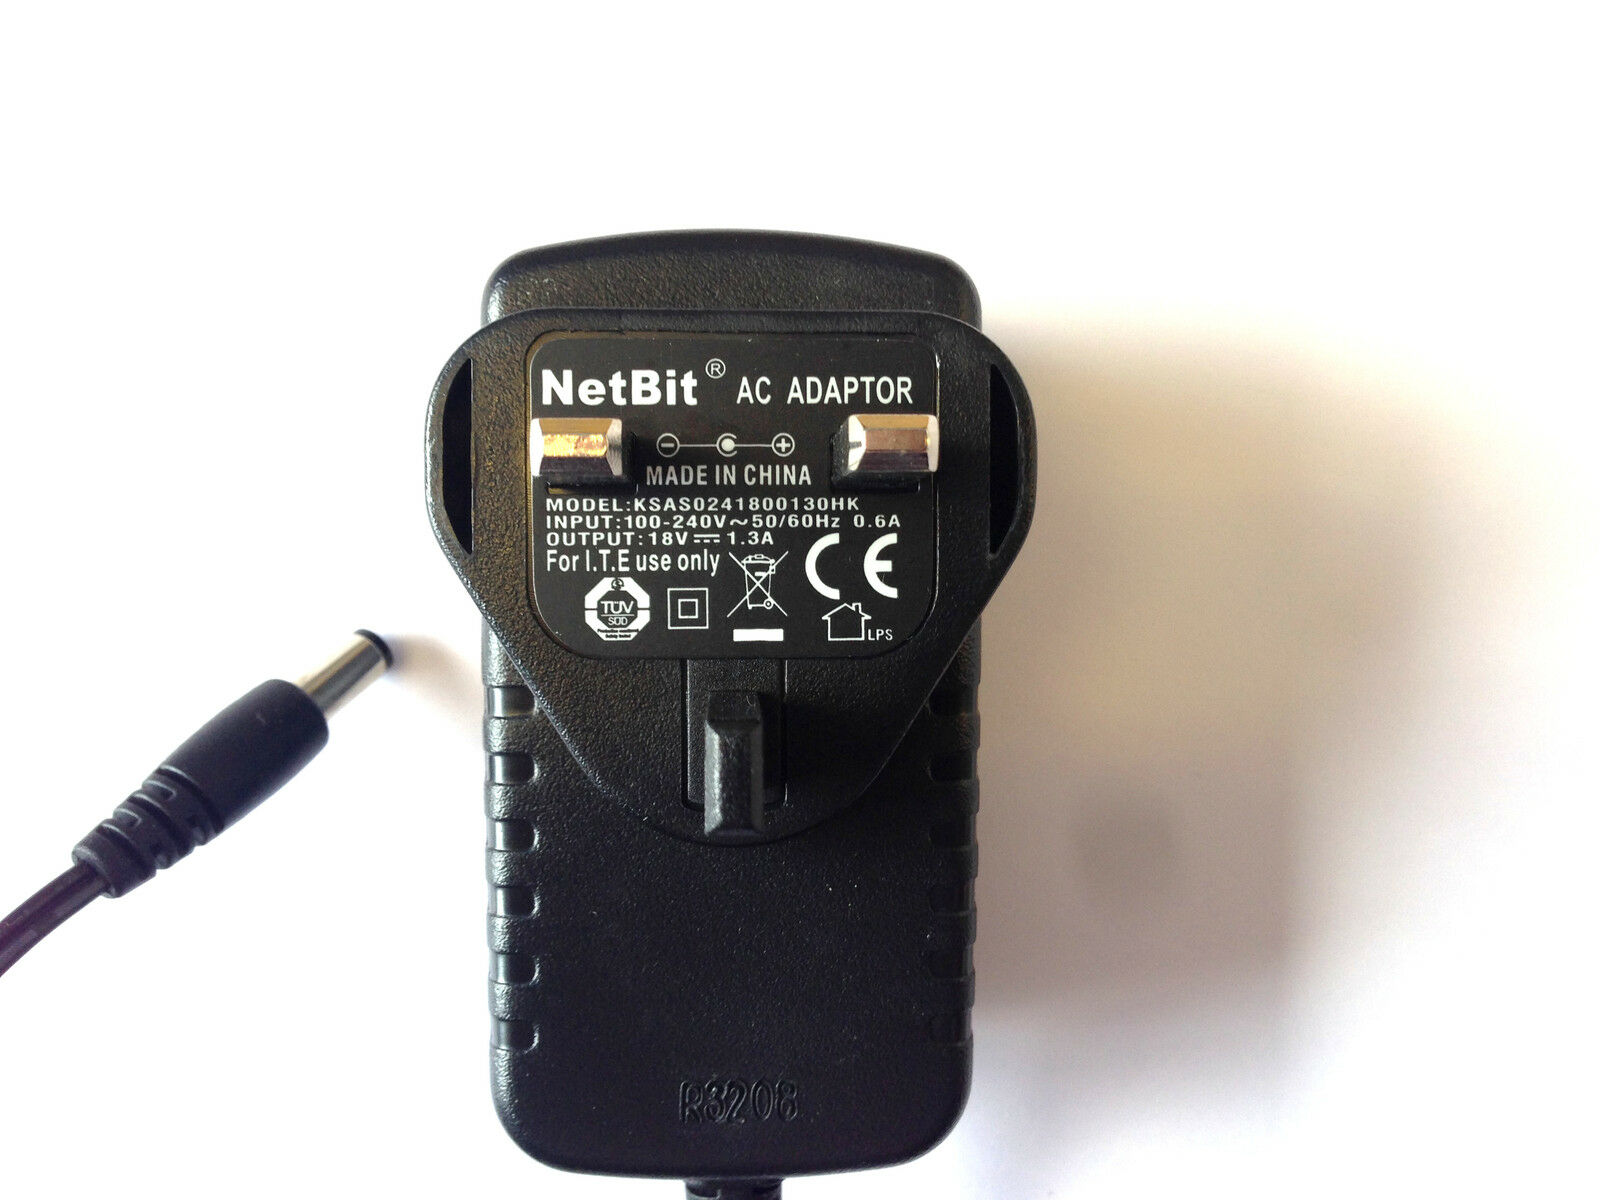 NETBIT KSAS0241800130HK AC ADAPTER 18V 1.3A POWER SUPPLY UK PLUG Colour: Black Unit Type: Unit Compatible Brand: Un